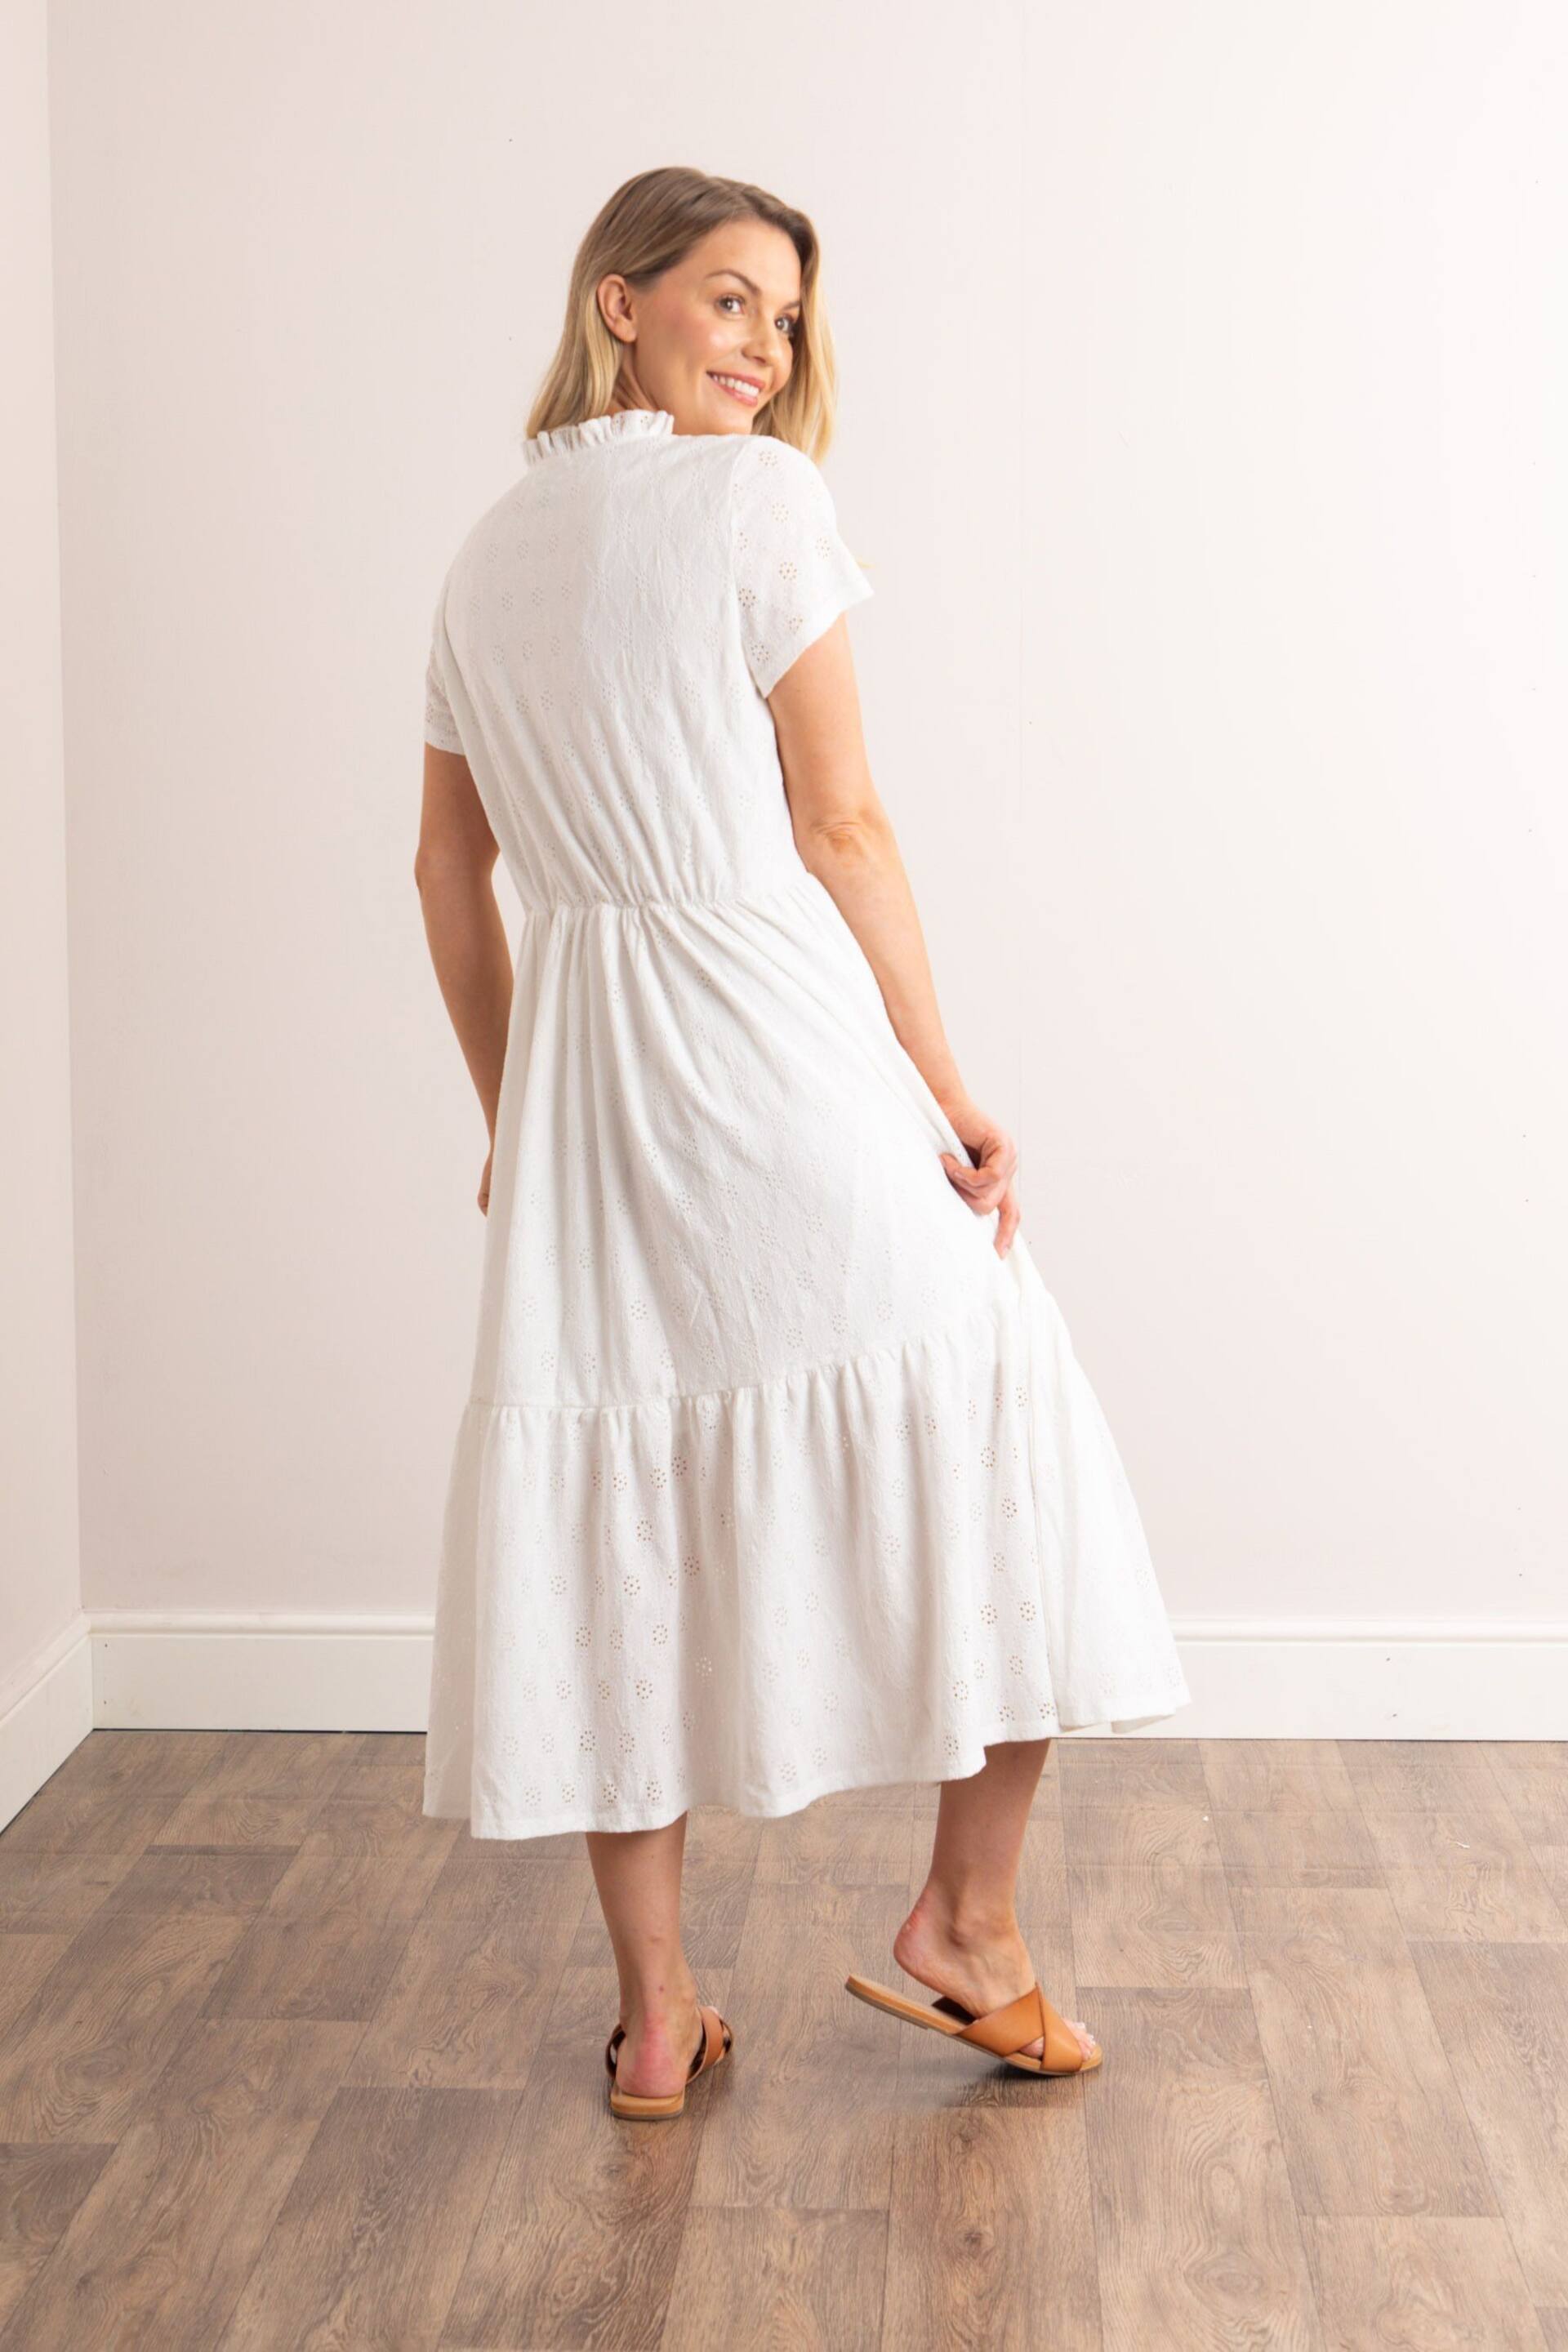 Lakeland Clothing Isla Pointelle Midi White Dress - Image 3 of 7